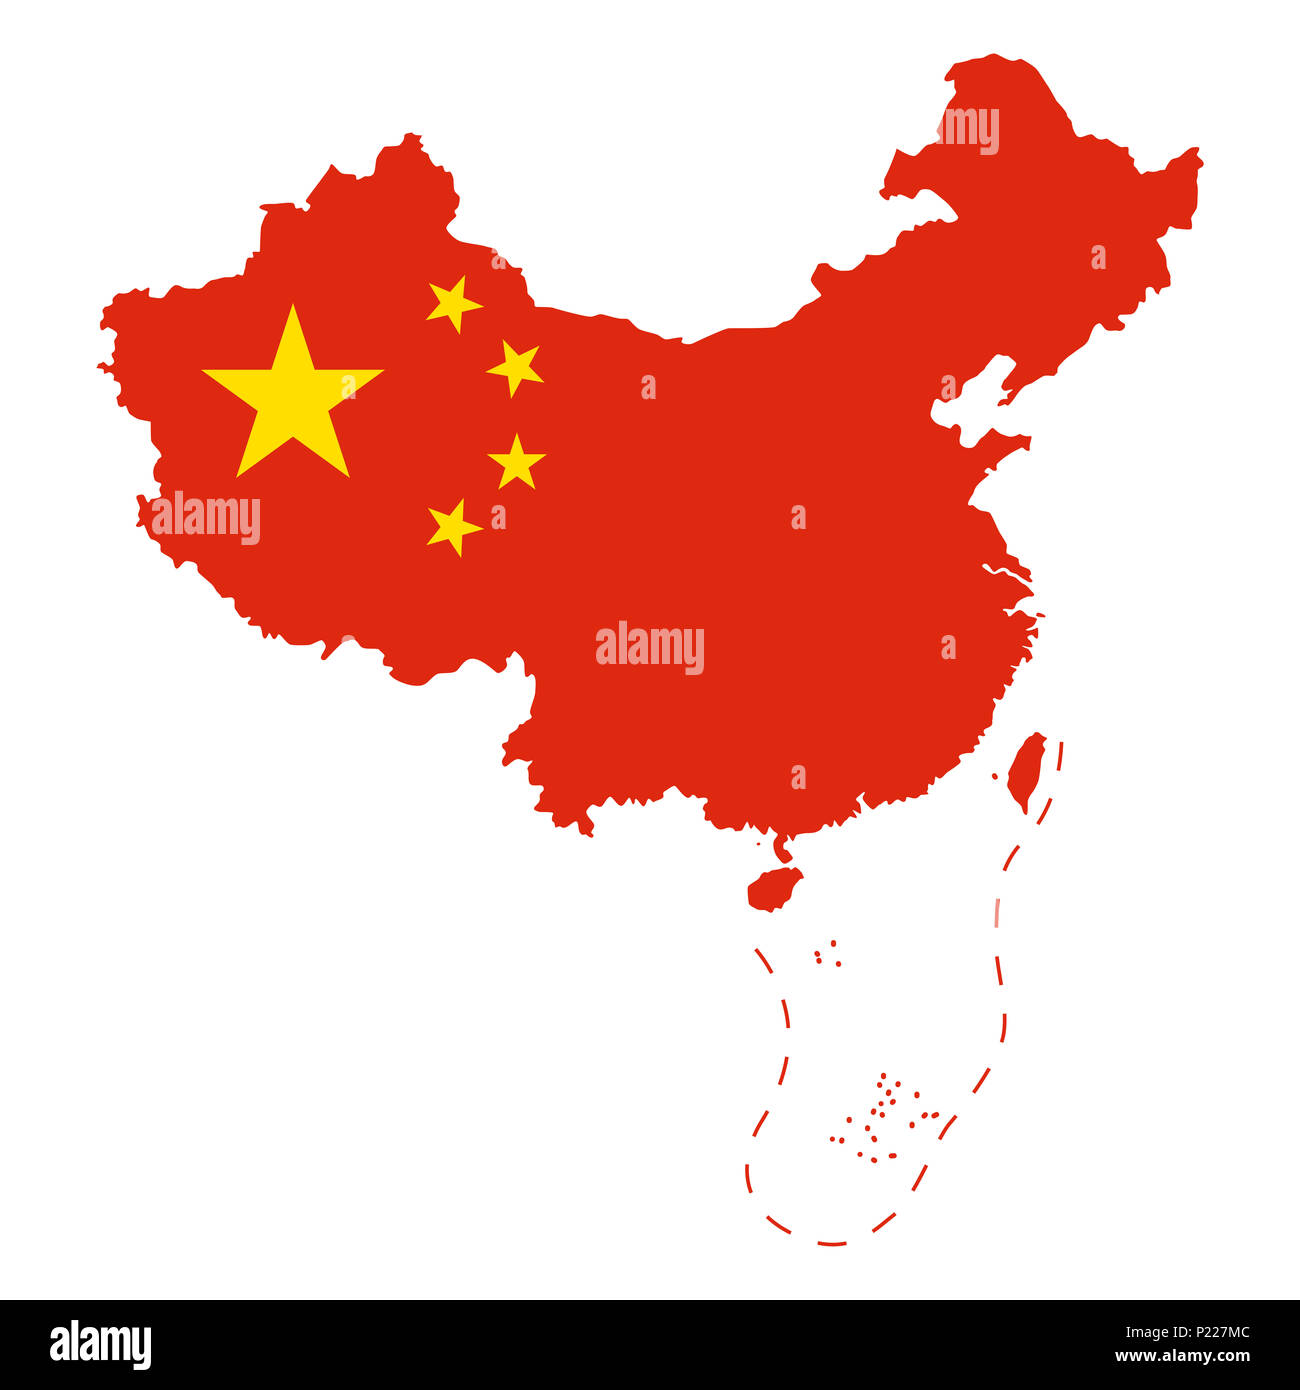 Drapeau de la Chine dans le pays. Zone contrôlée par la République populaire de Chine, République populaire de Chine, et réclamé, mais les régions non contrôlées. Cinq étoiles drapeau rouge. Banque D'Images